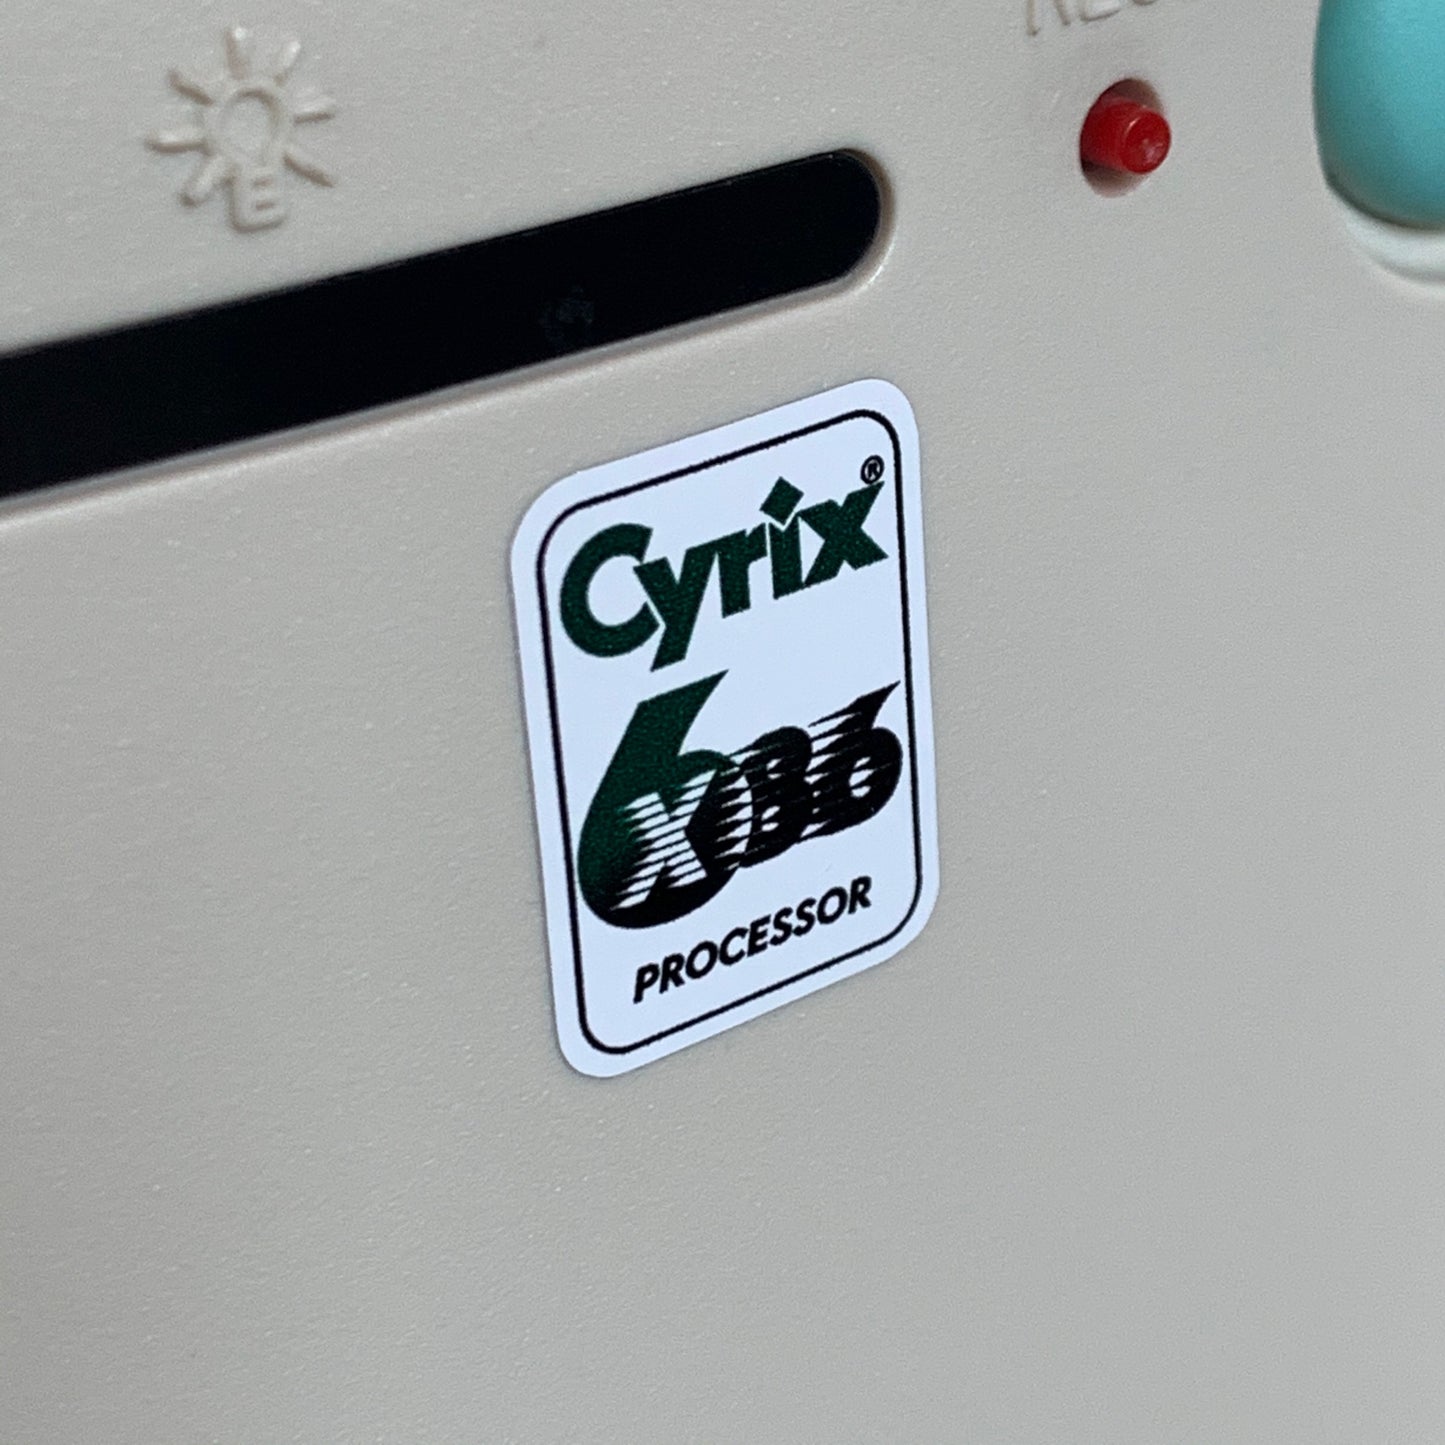 Cyrix 6x86 Processor Case Badge Sticker - White